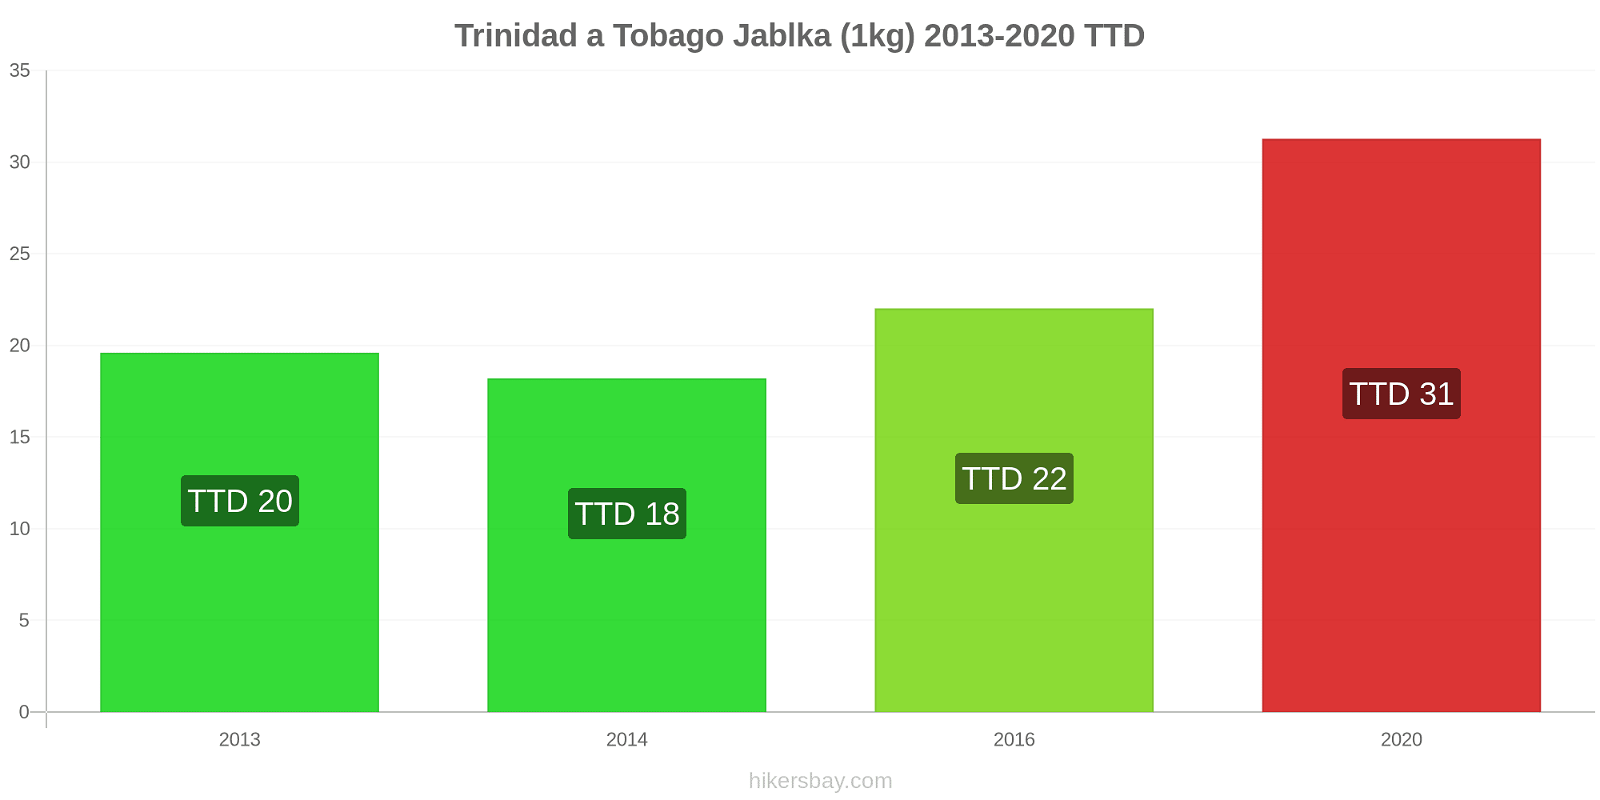 Trinidad a Tobago změny cen Jablka (1kg) hikersbay.com